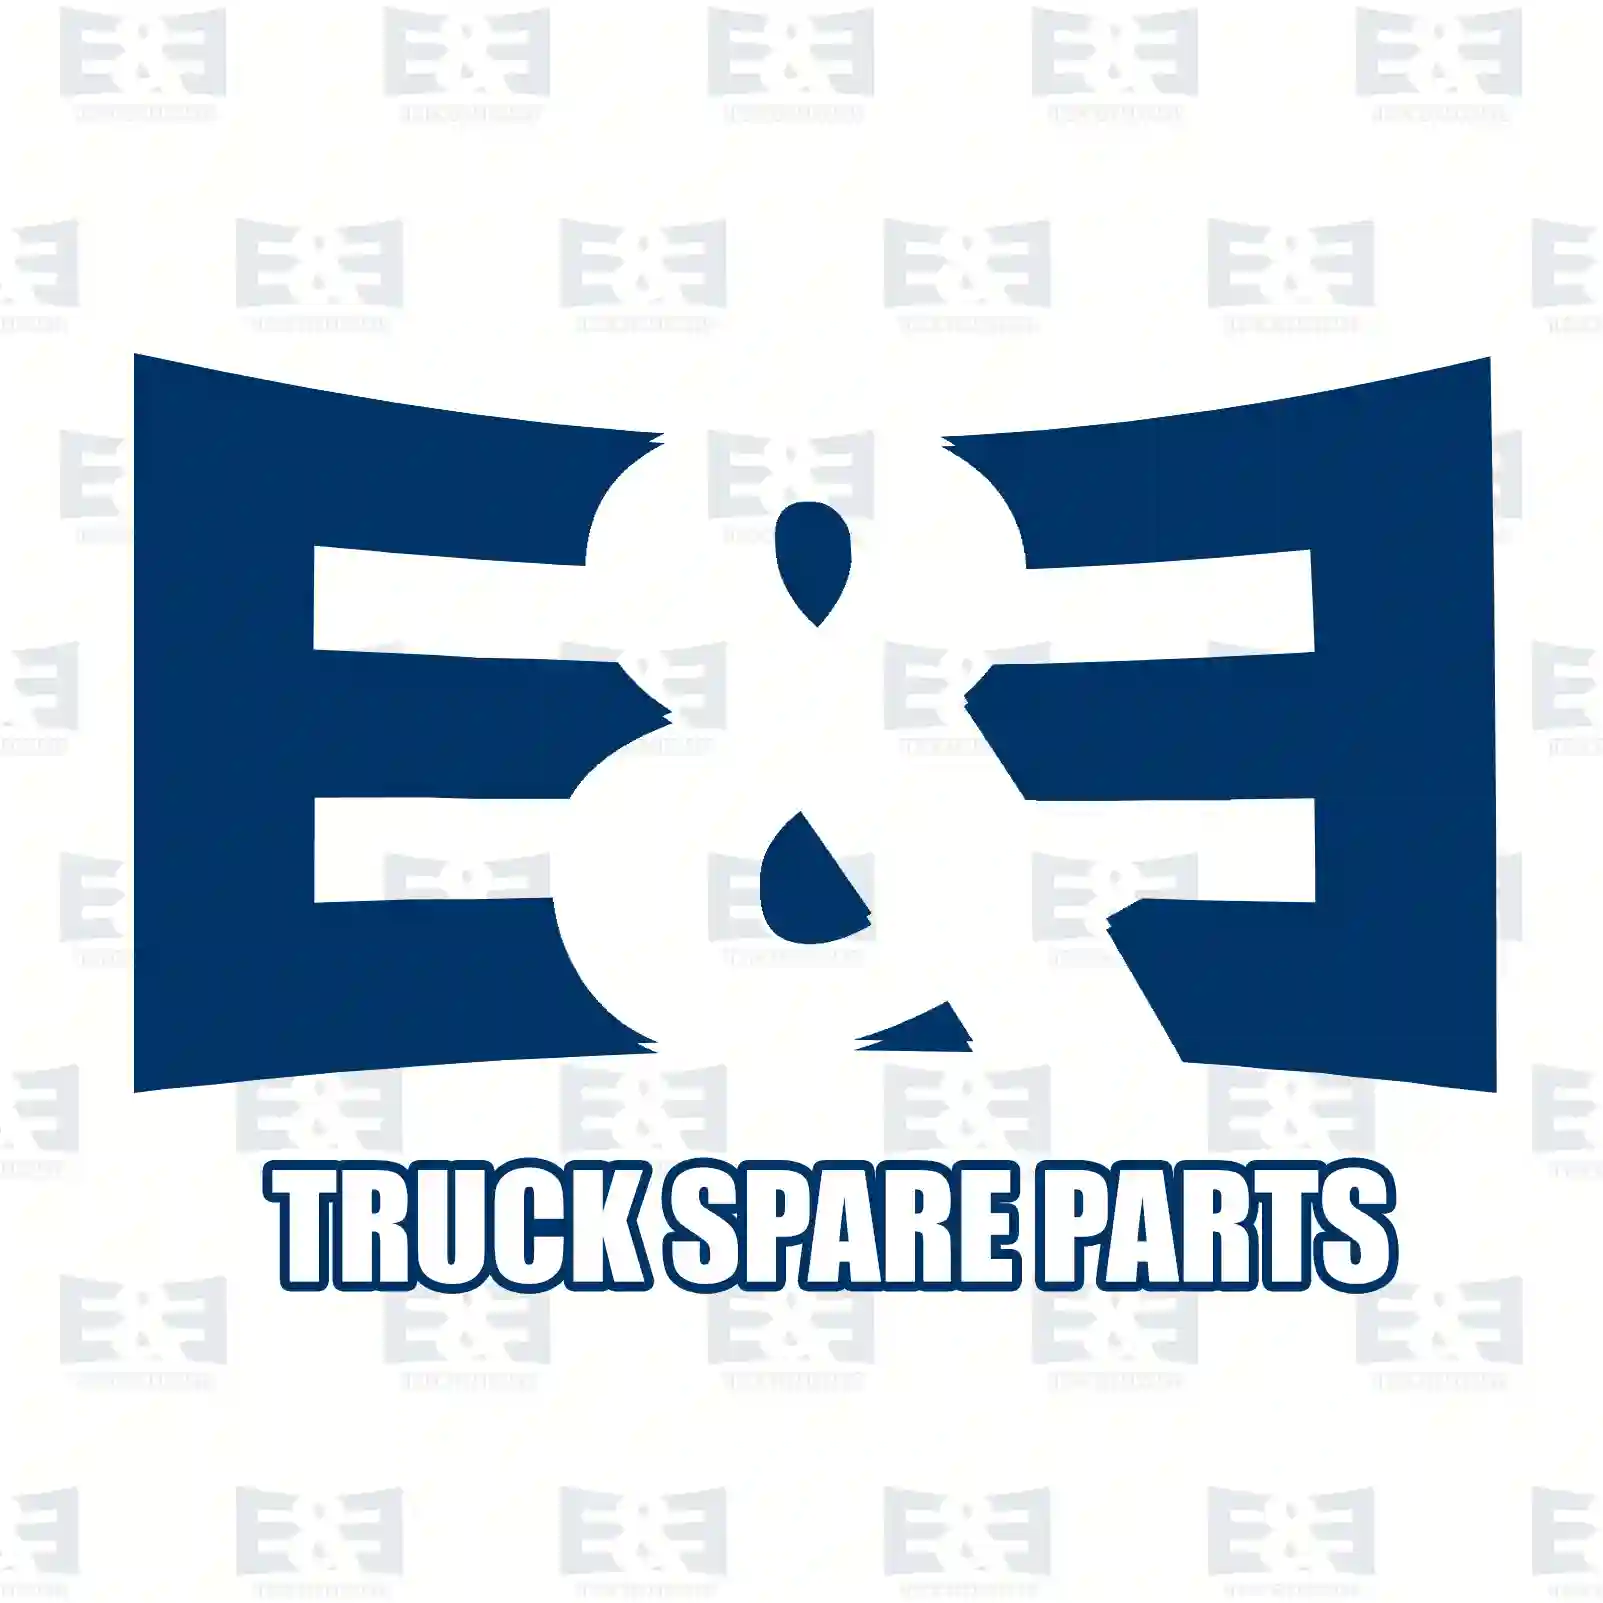 Propeller shaft, 2E2276863, 1068138 ||  2E2276863 E&E Truck Spare Parts | Truck Spare Parts, Auotomotive Spare Parts Propeller shaft, 2E2276863, 1068138 ||  2E2276863 E&E Truck Spare Parts | Truck Spare Parts, Auotomotive Spare Parts